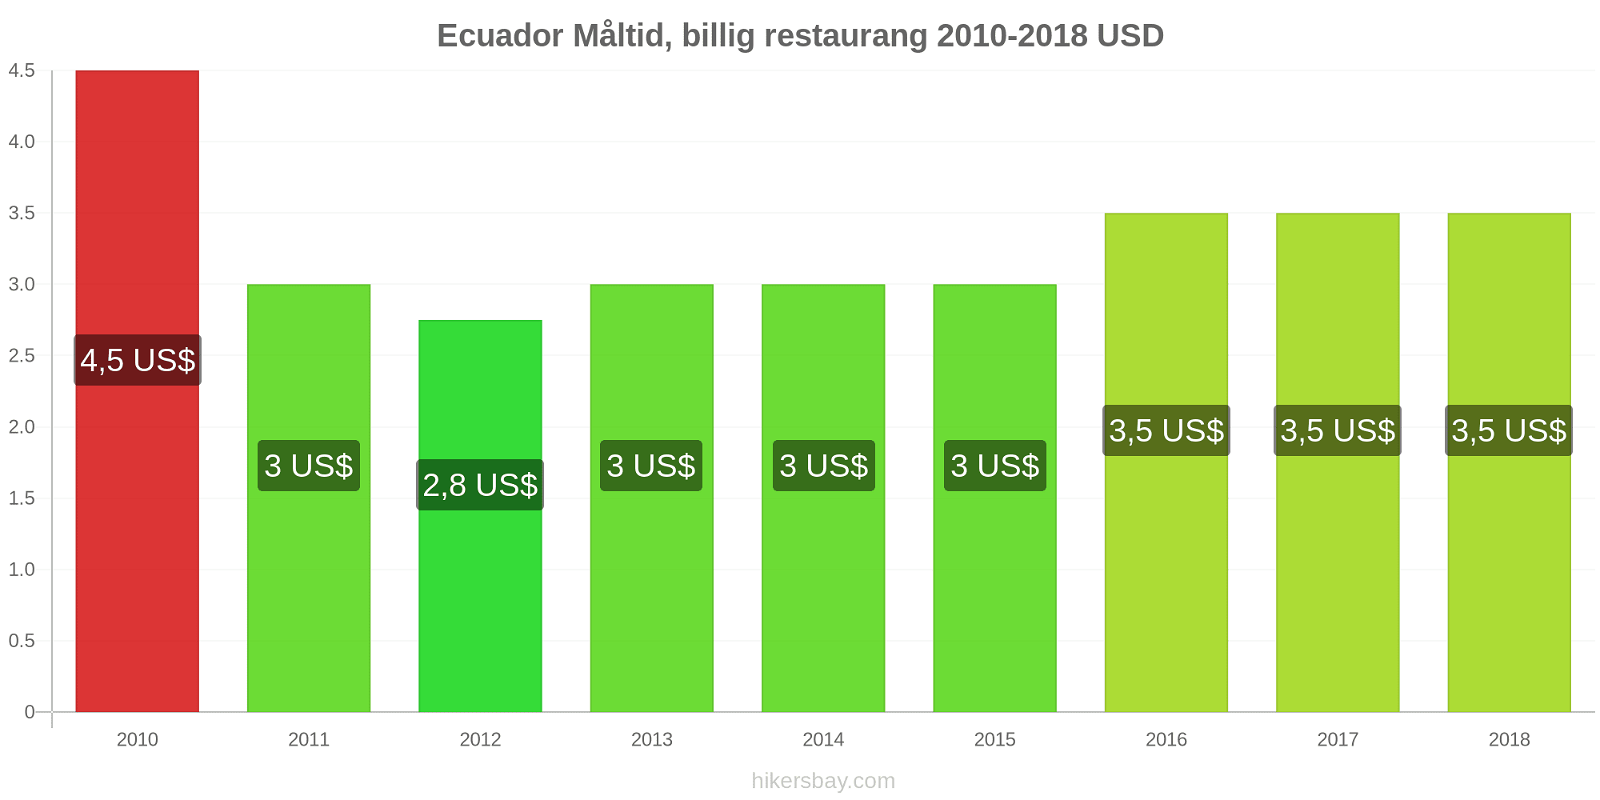 Ecuador prisändringar Måltid i en billig restaurang hikersbay.com